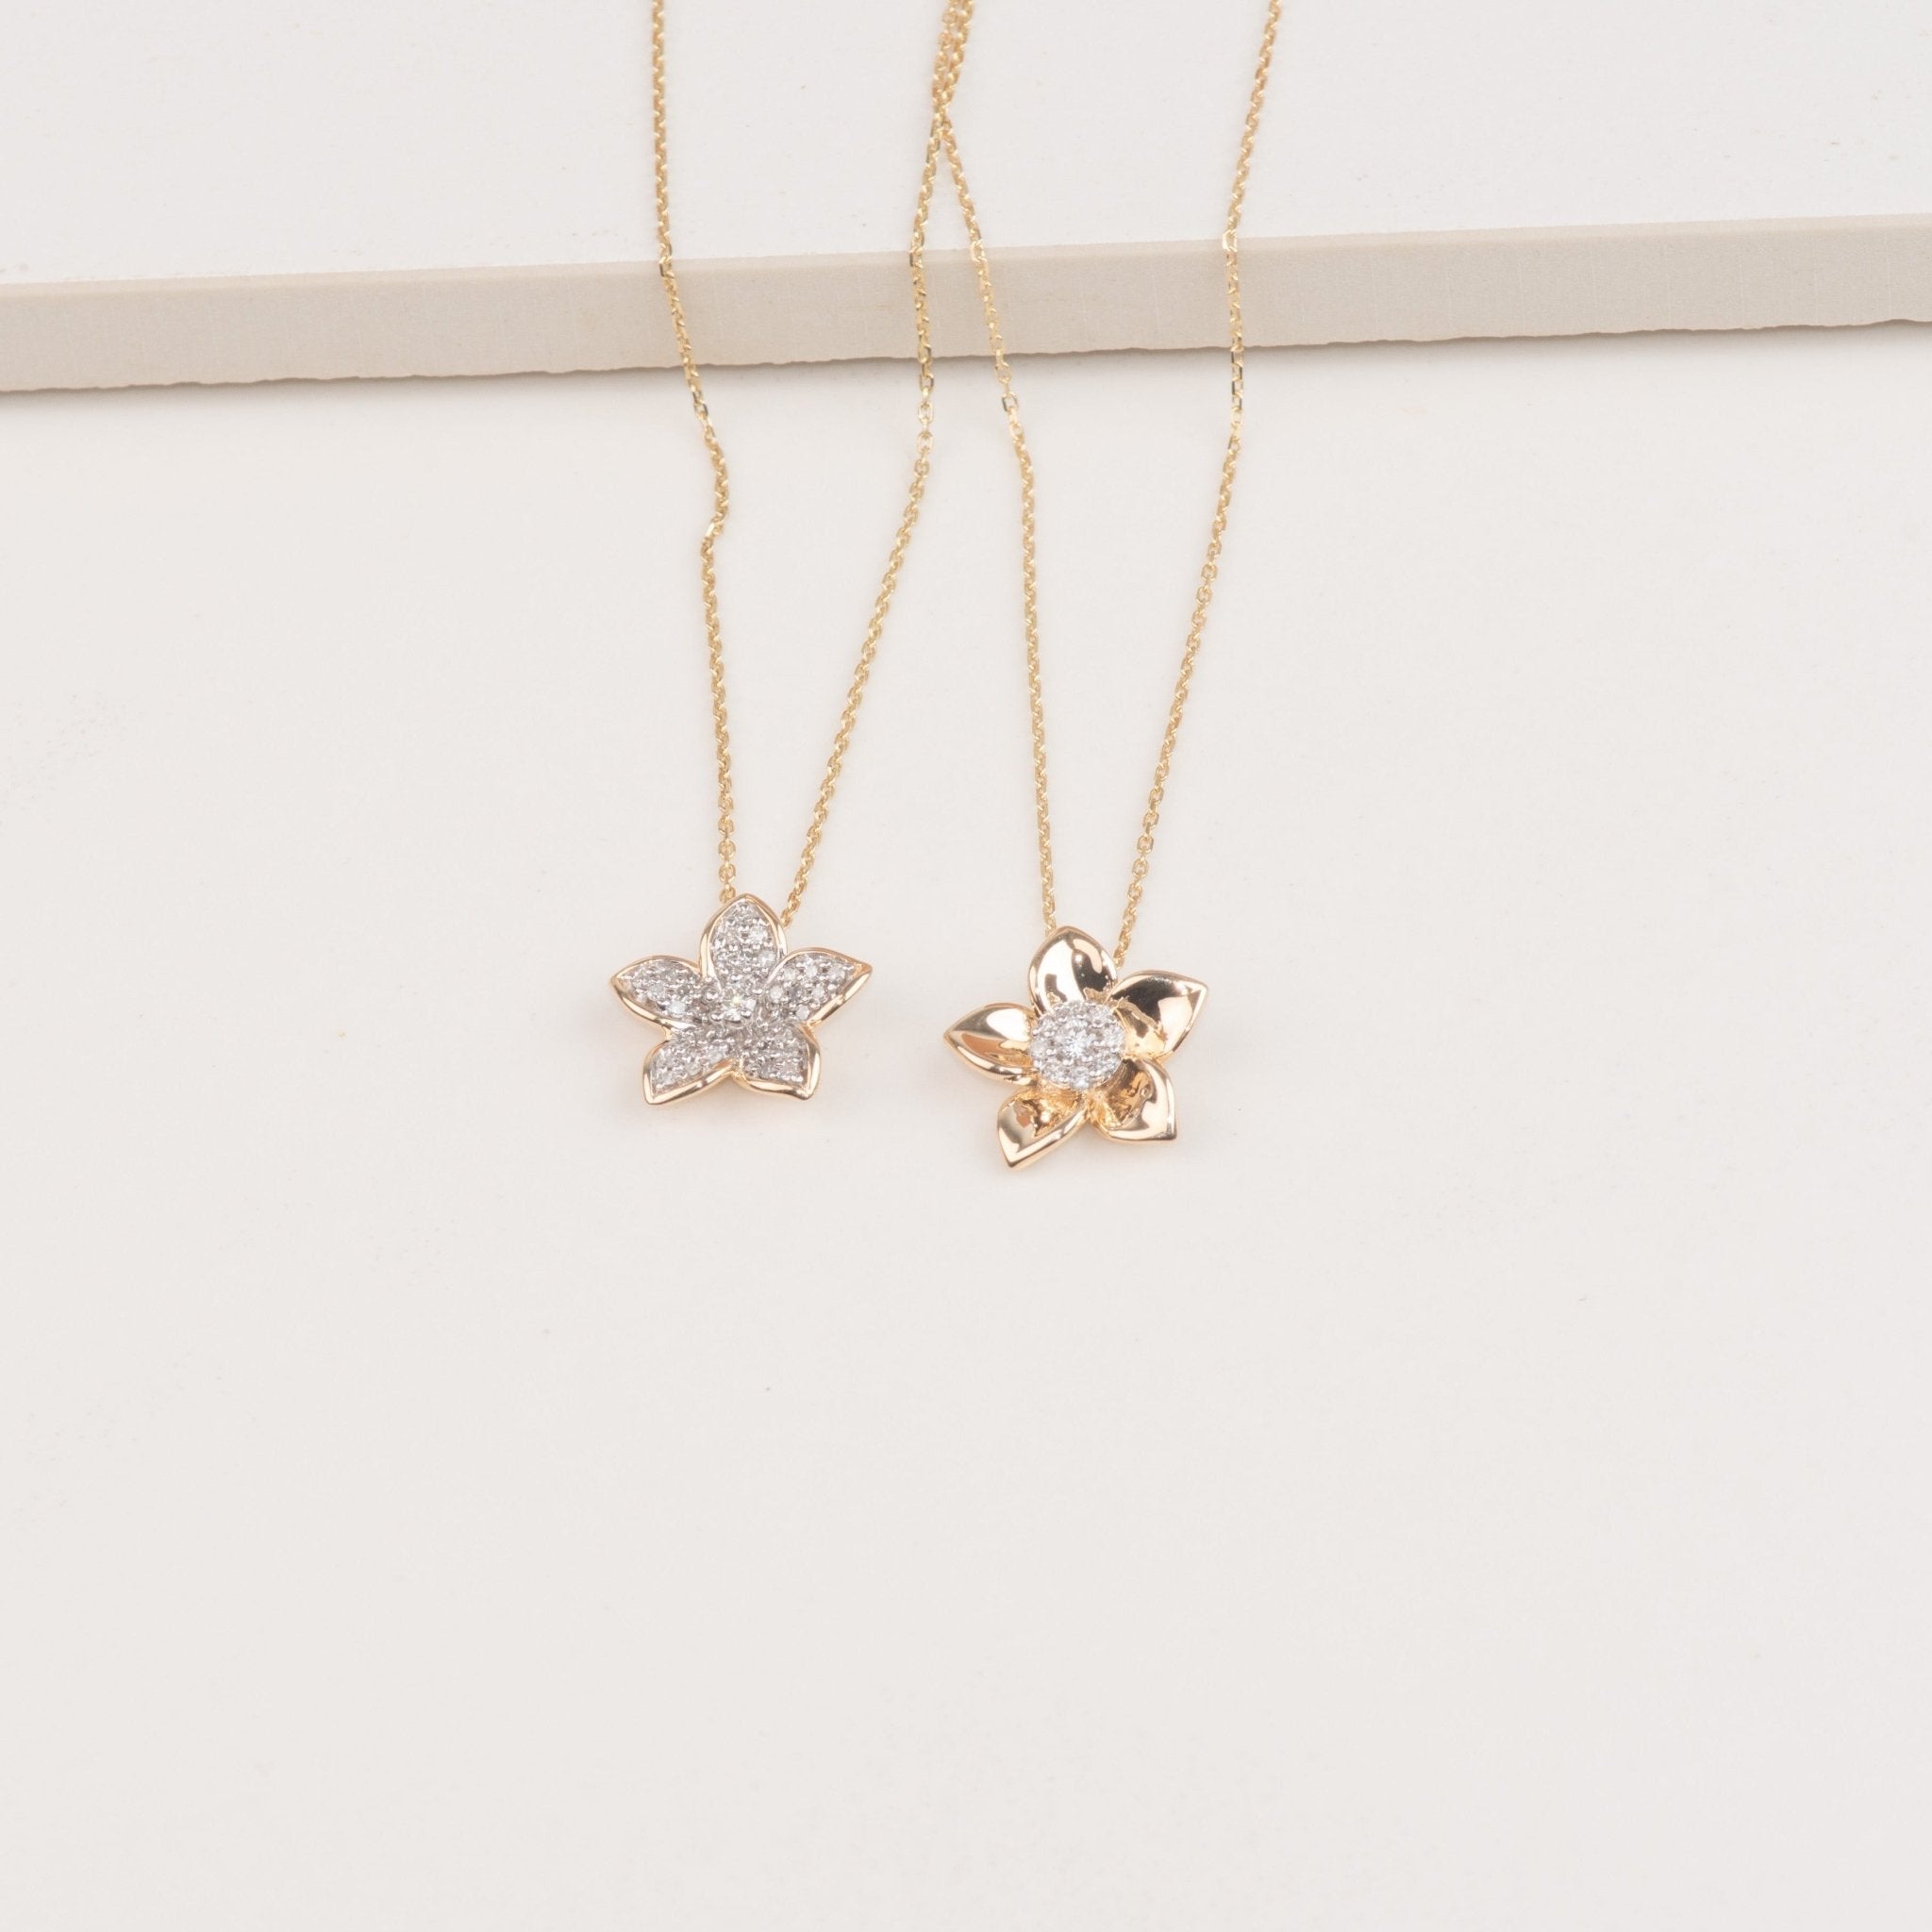 Diamond Pave Center Flower Pendant with Five Gold Petals Necklaces Estella Collection #product_description# 32738 10k April Birthstone Colorless Gemstone #tag4# #tag5# #tag6# #tag7# #tag8# #tag9# #tag10#